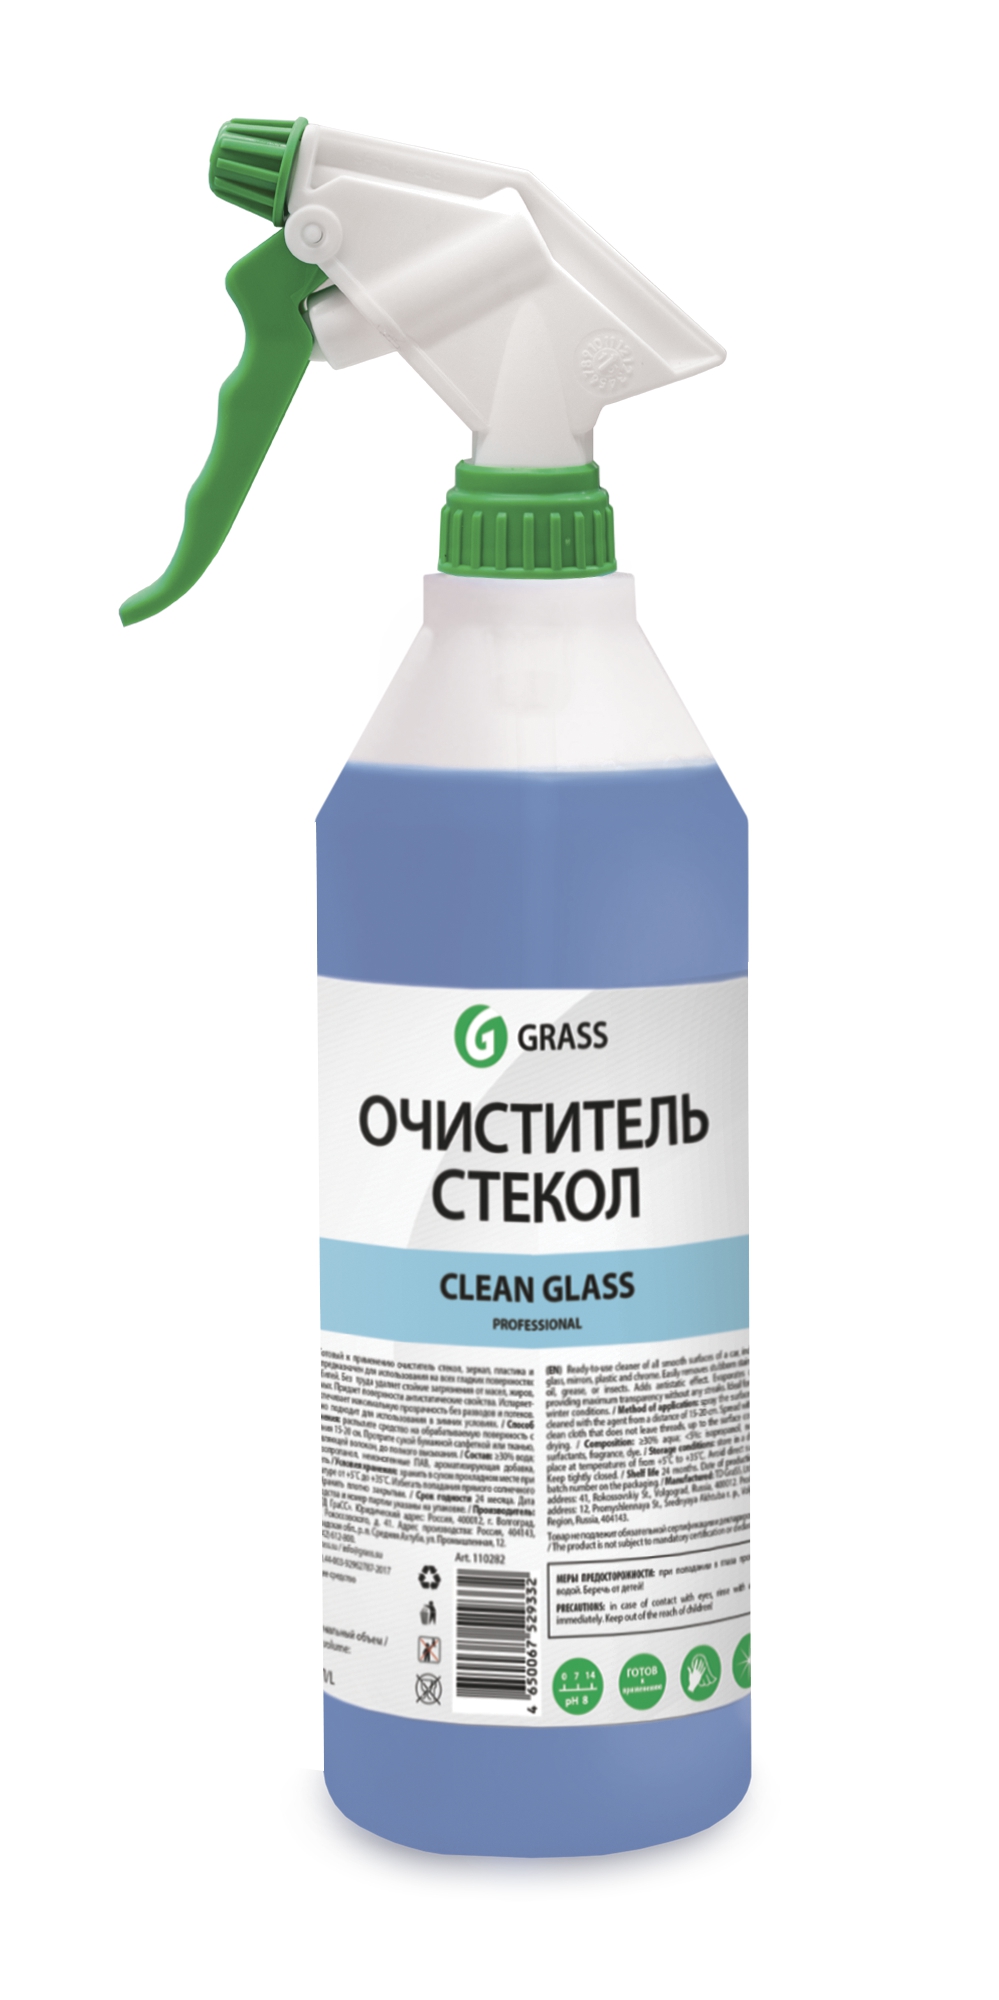 Clean Glass Очиститель стекол 1л professional (с проф. тригером) GRASS Grass  110355_1